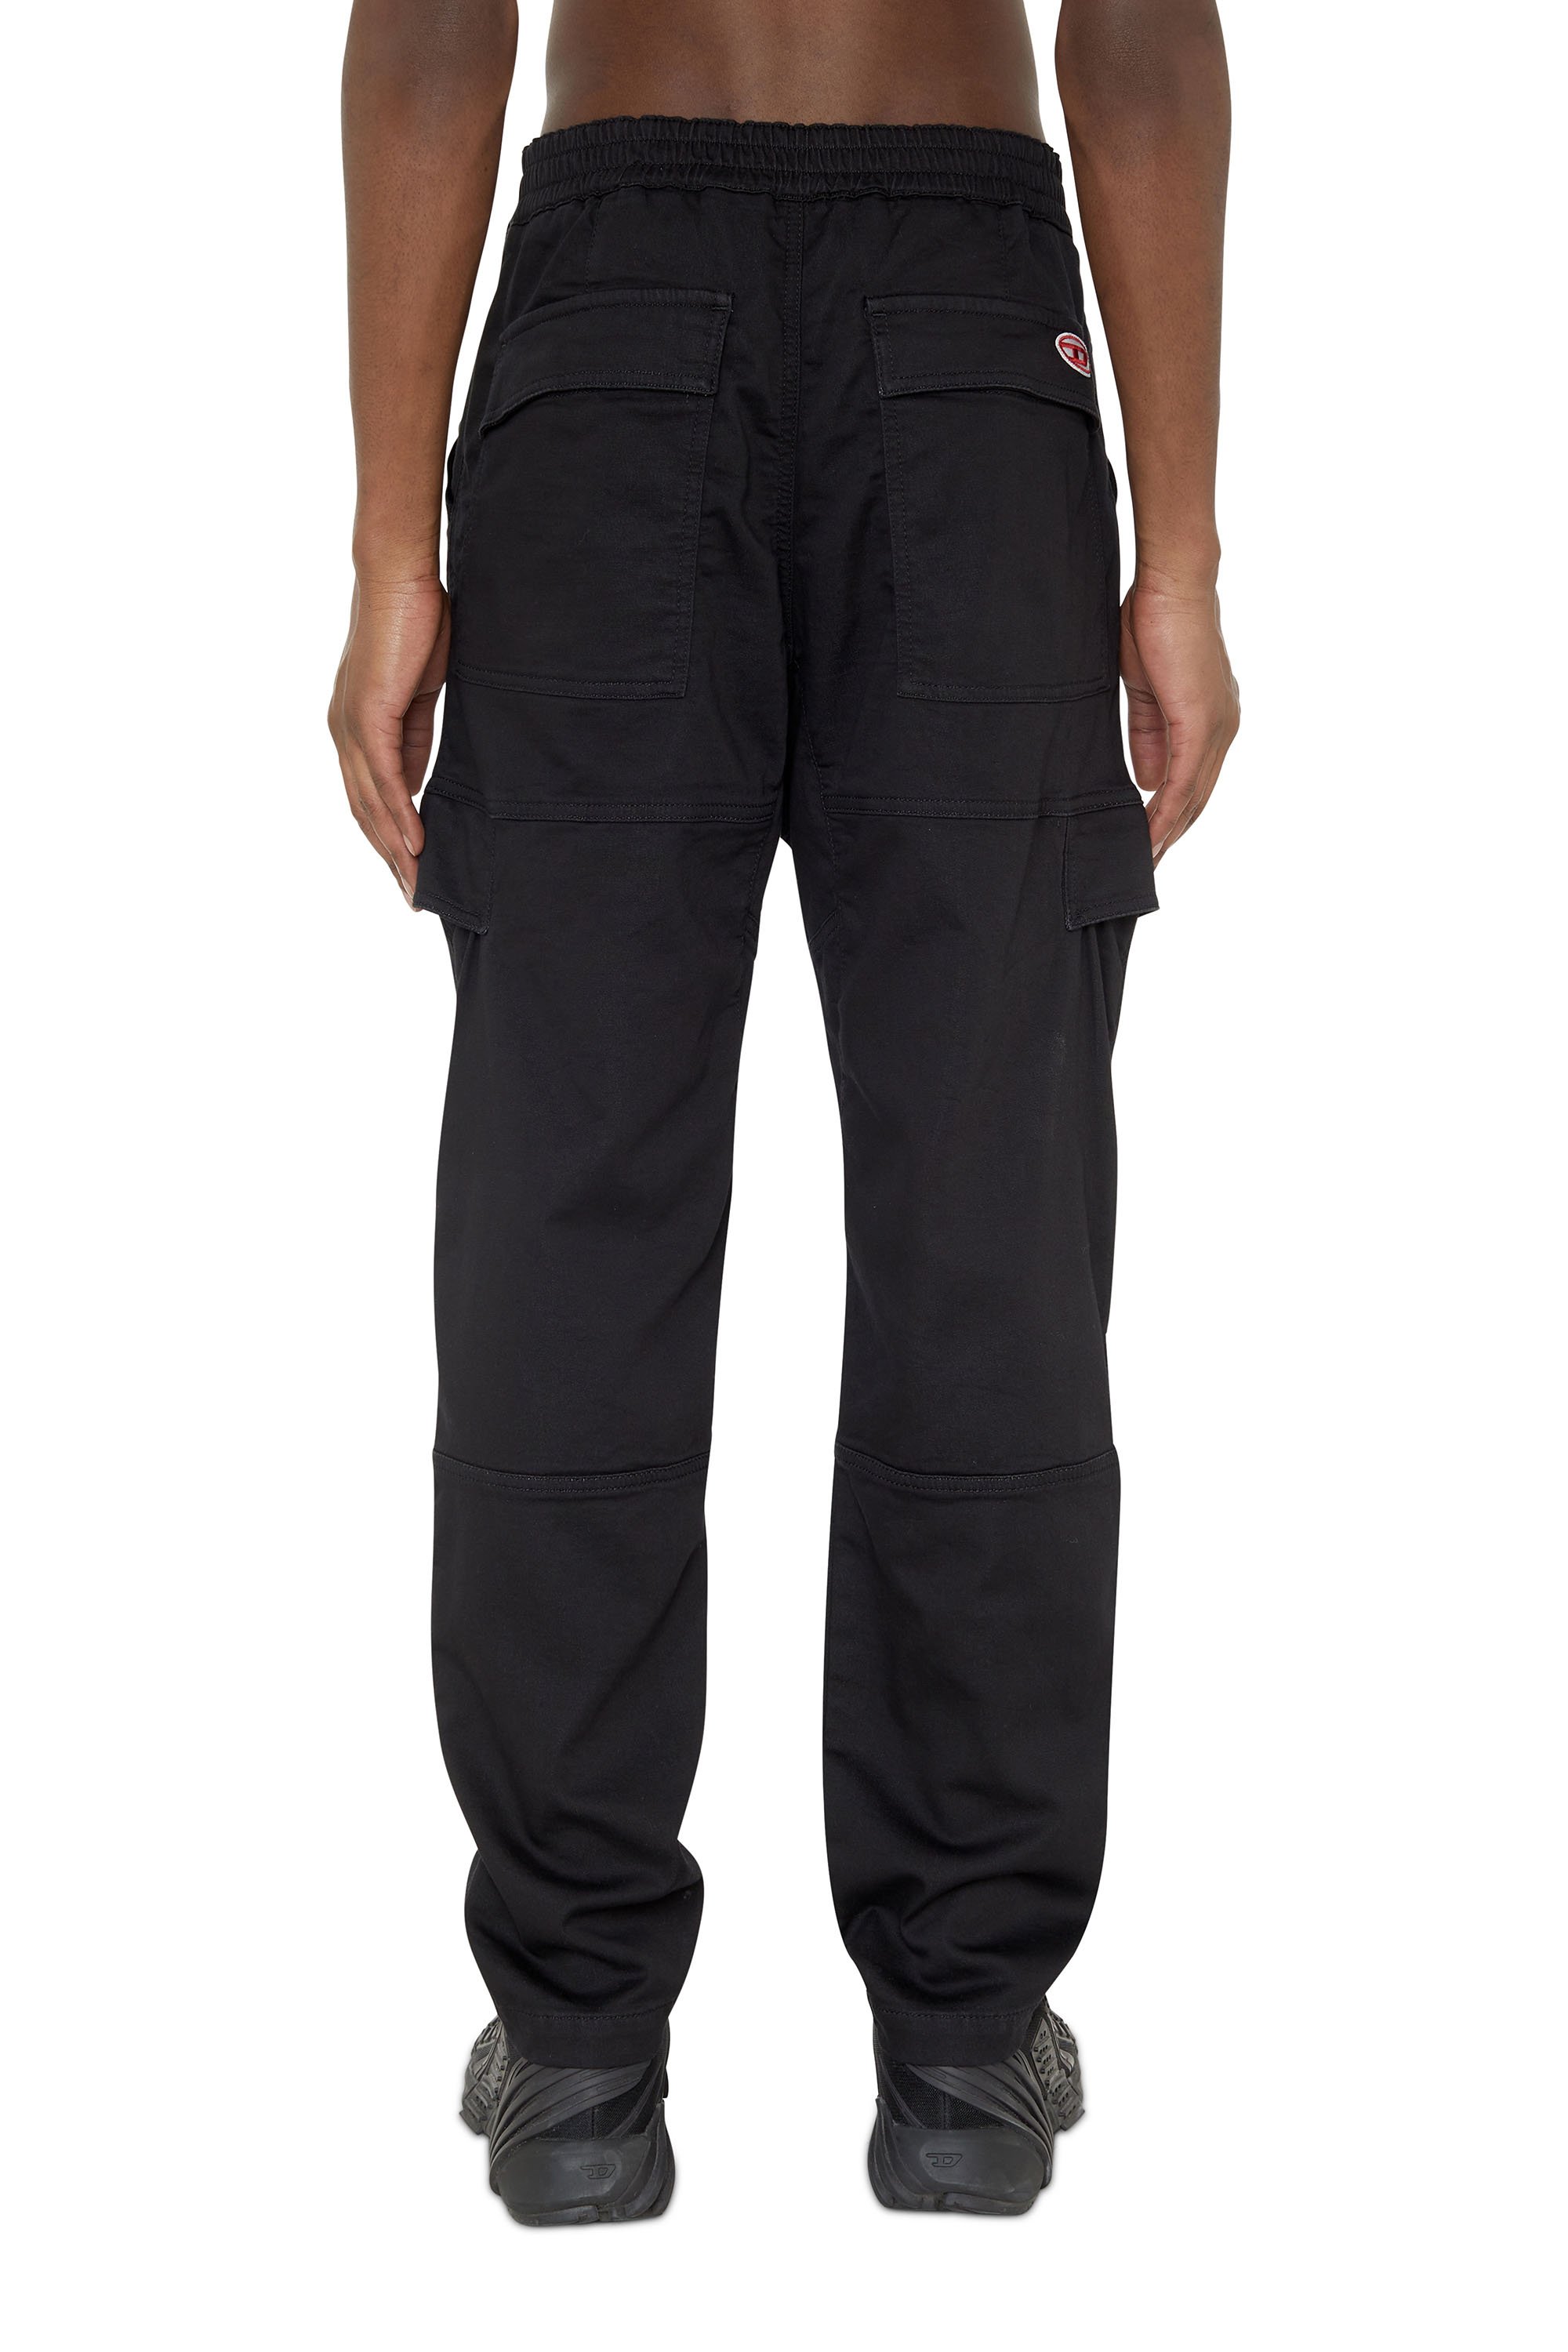 Diesel - Krooley JoggJeans® 069ZG Tapered, Black/Dark grey - Image 2